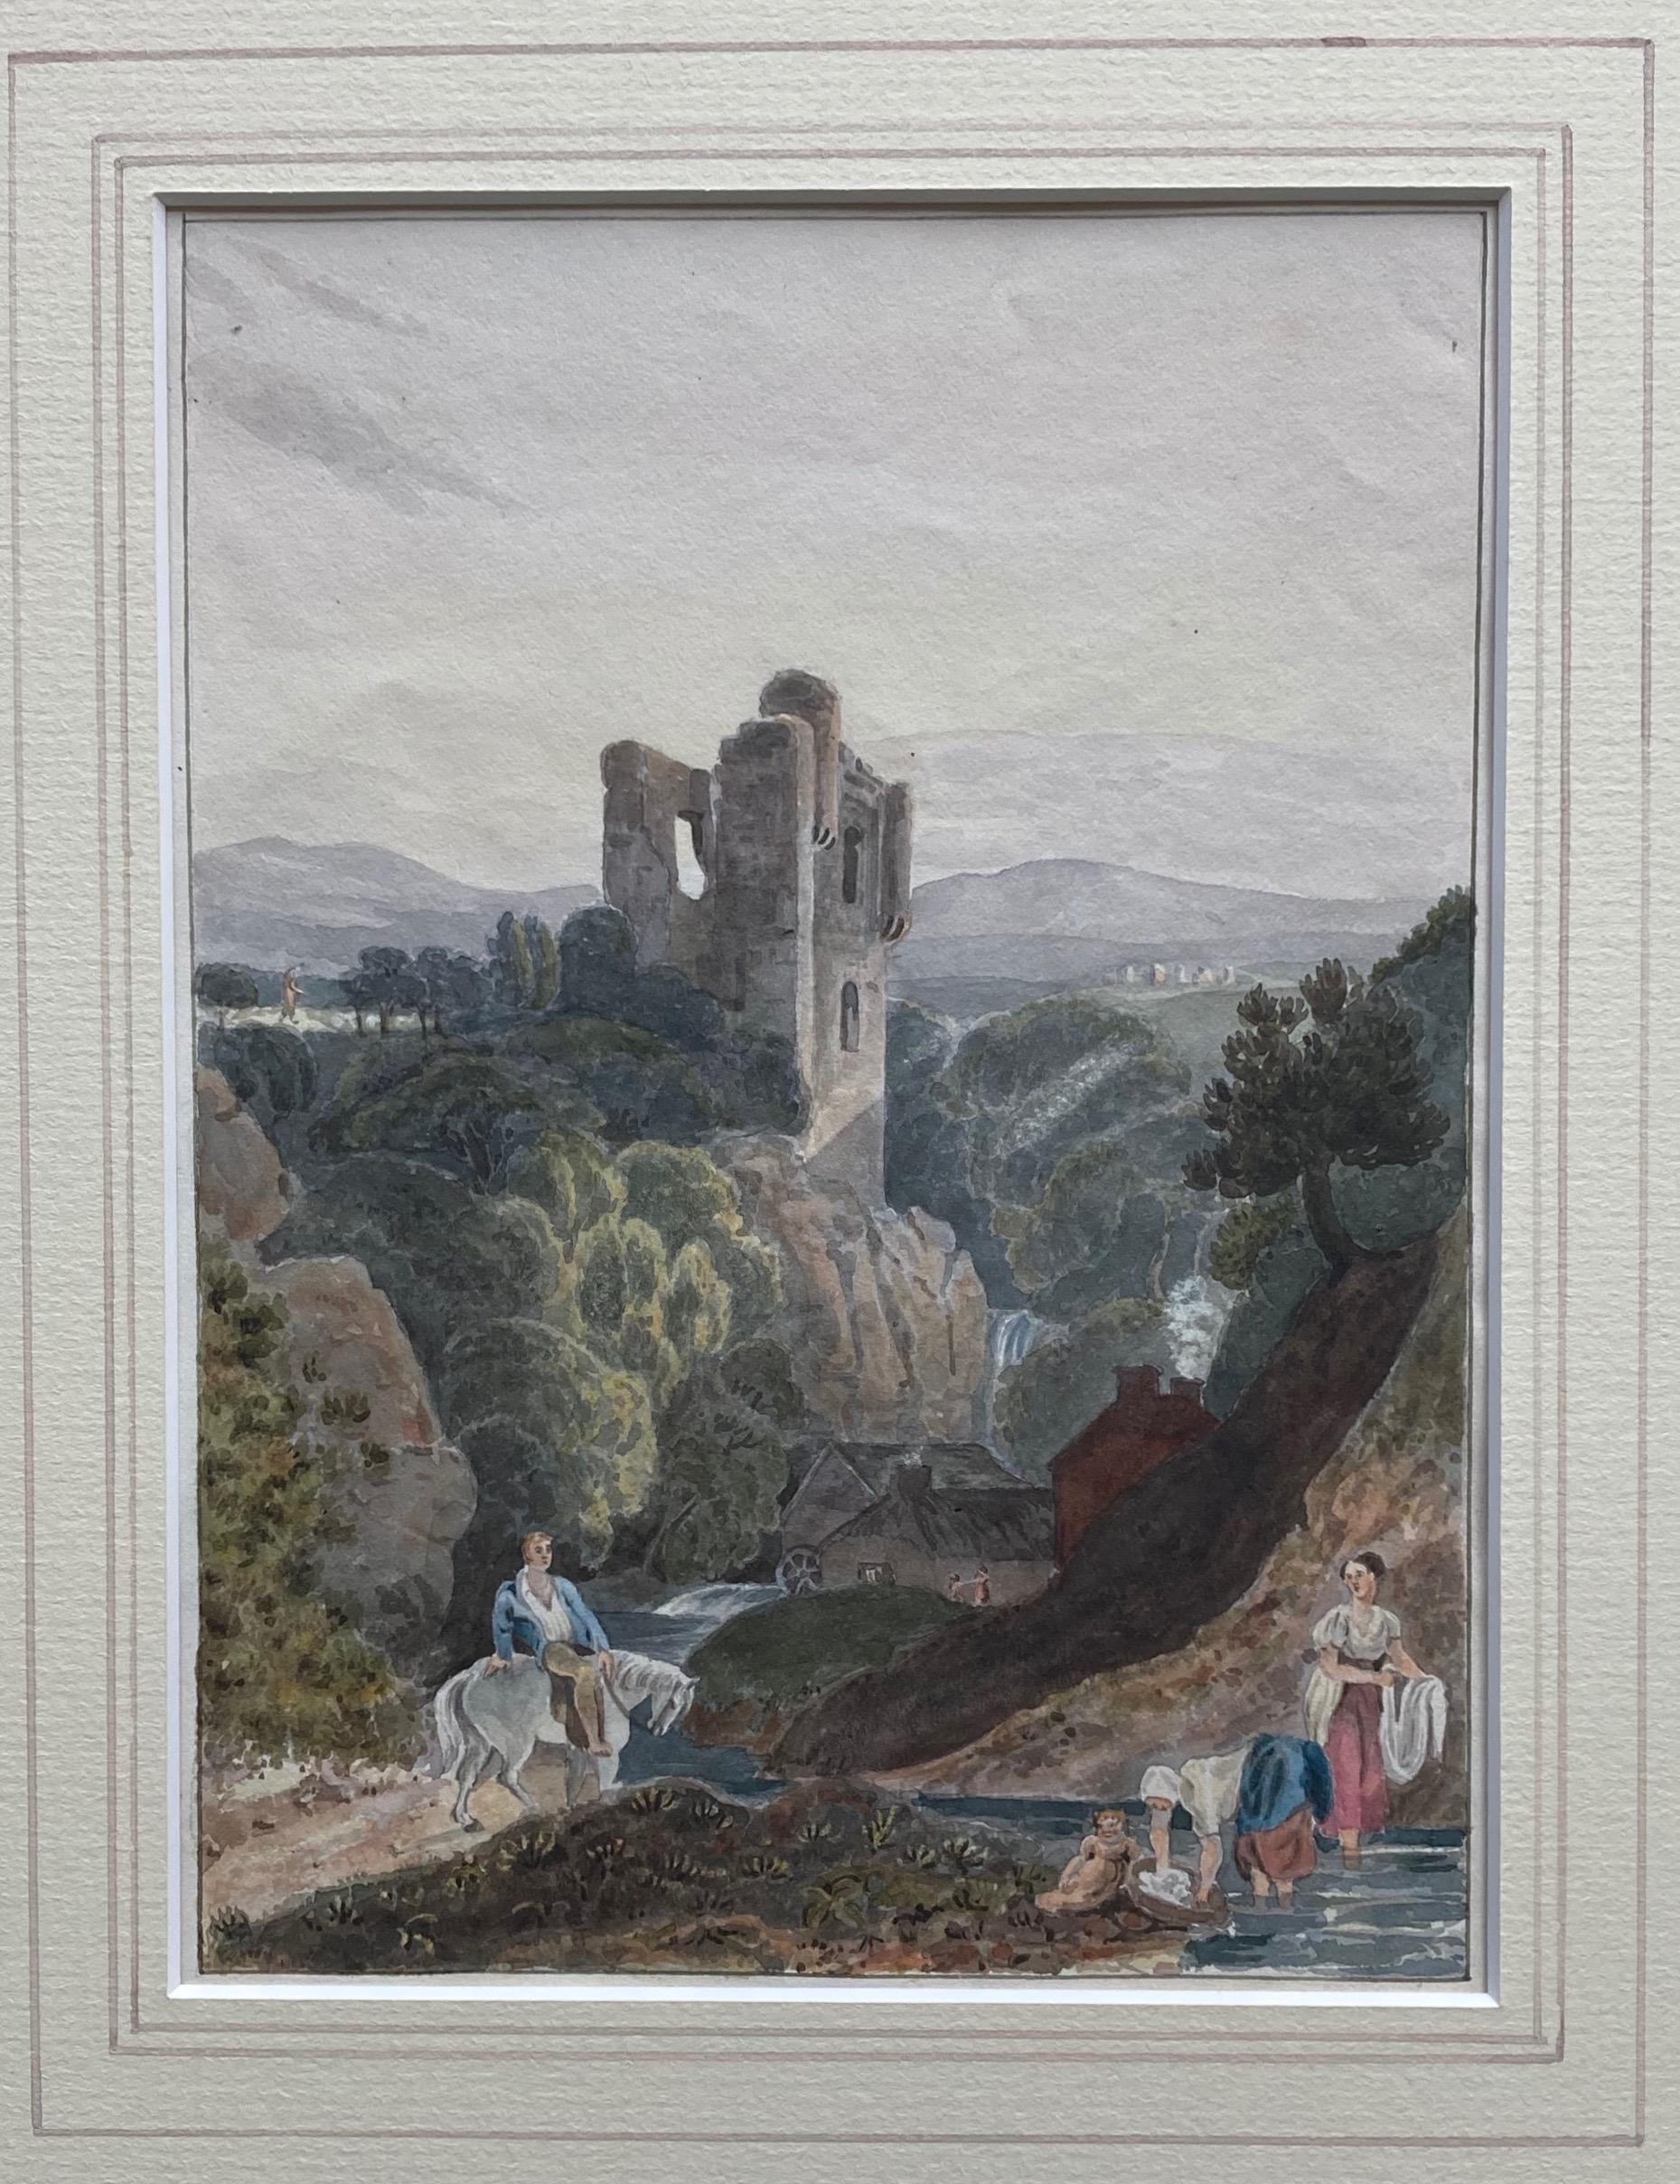 Cercle de Samuel Prout, aquarelle du 19e siècle, château dans un paysage fluvial